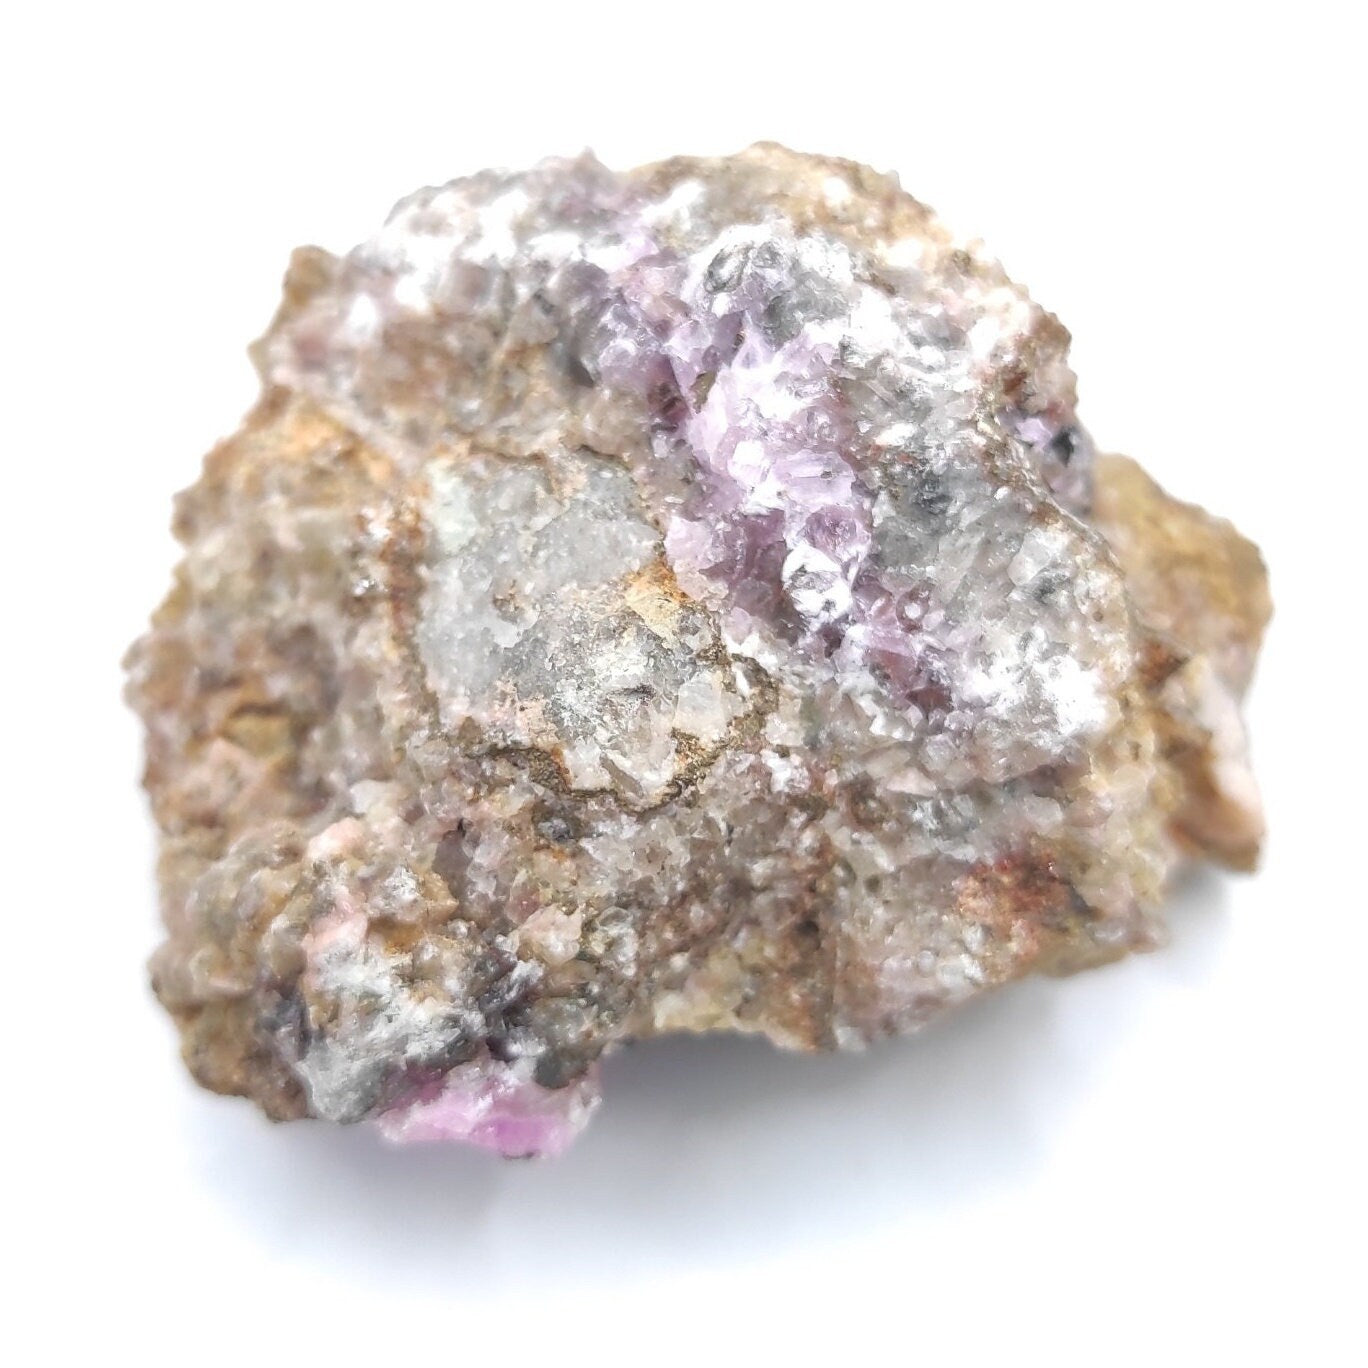 91g Cobalto Calcite - Pink Cobalt Calcite from Bou Azzer, Morocco - Salrose Stone - Cobaltocalcite Mineral Specimen - Pink Calcite Crystal